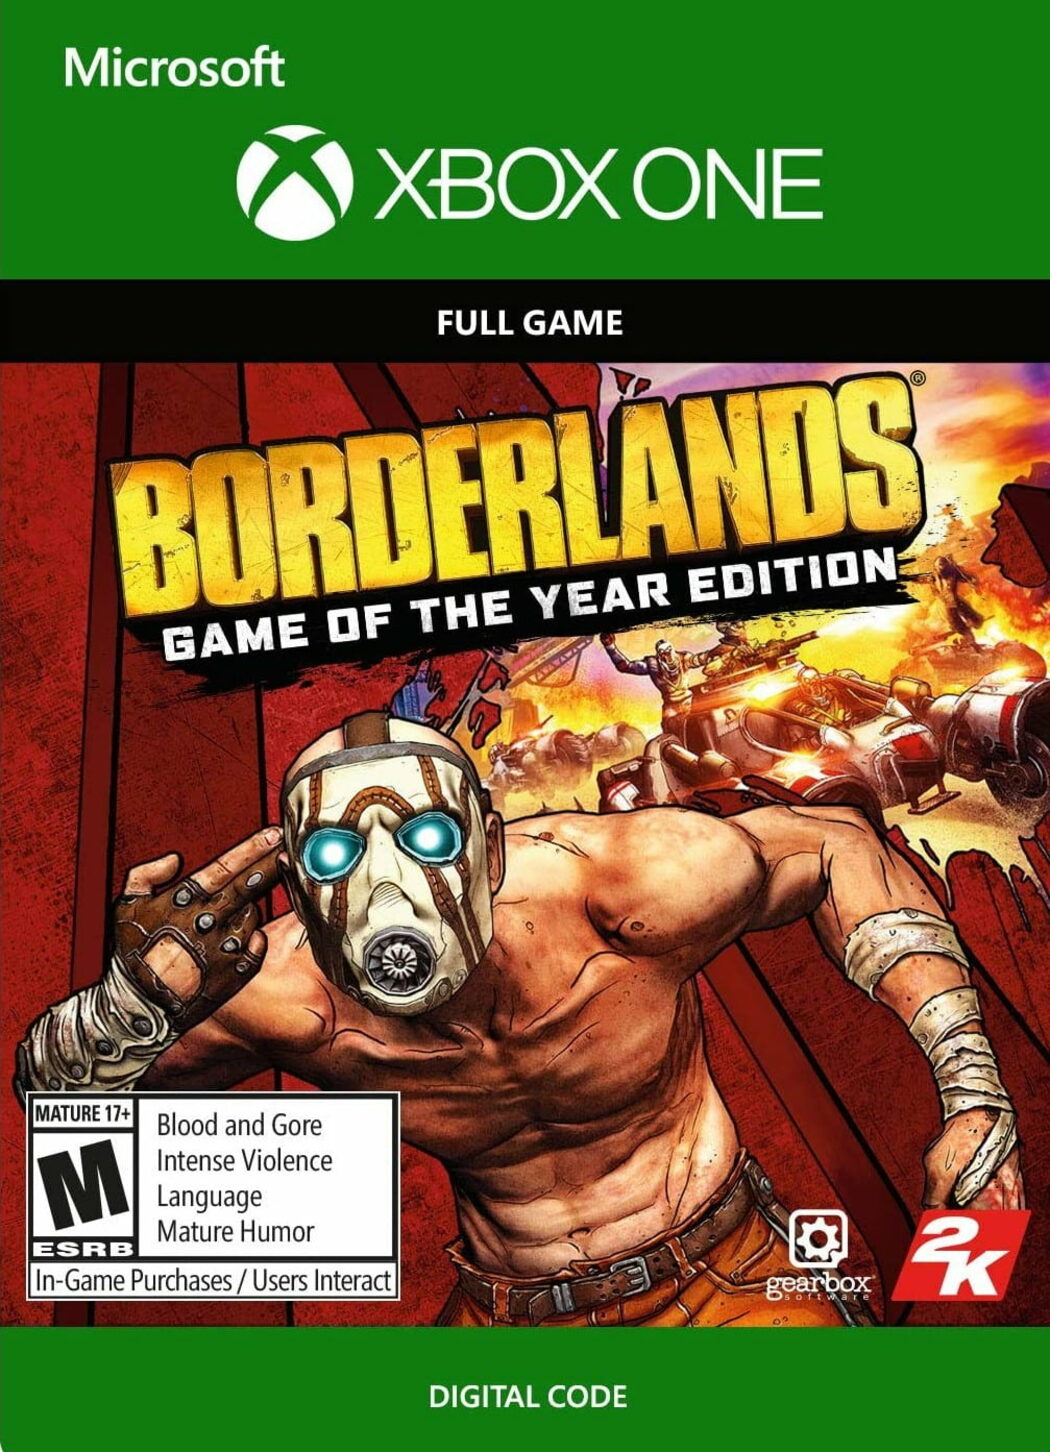 Jogo Borderlands 2 (GOTY) - Xbox 360